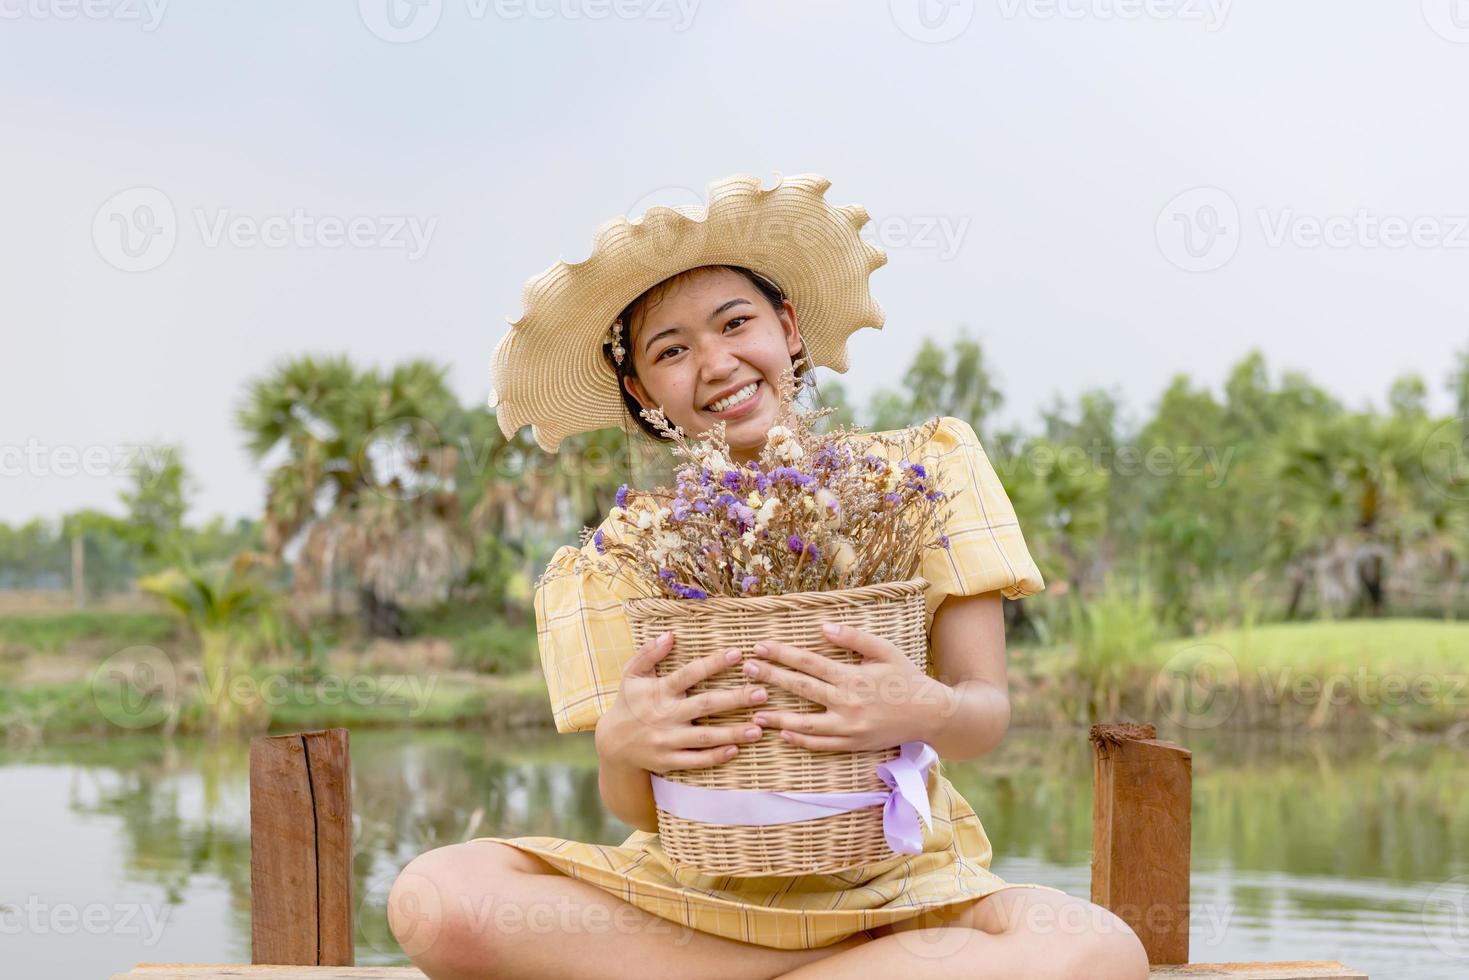 felicidade, uma linda mulher no jardim, colocada em um chapéu, segurando flores. foto